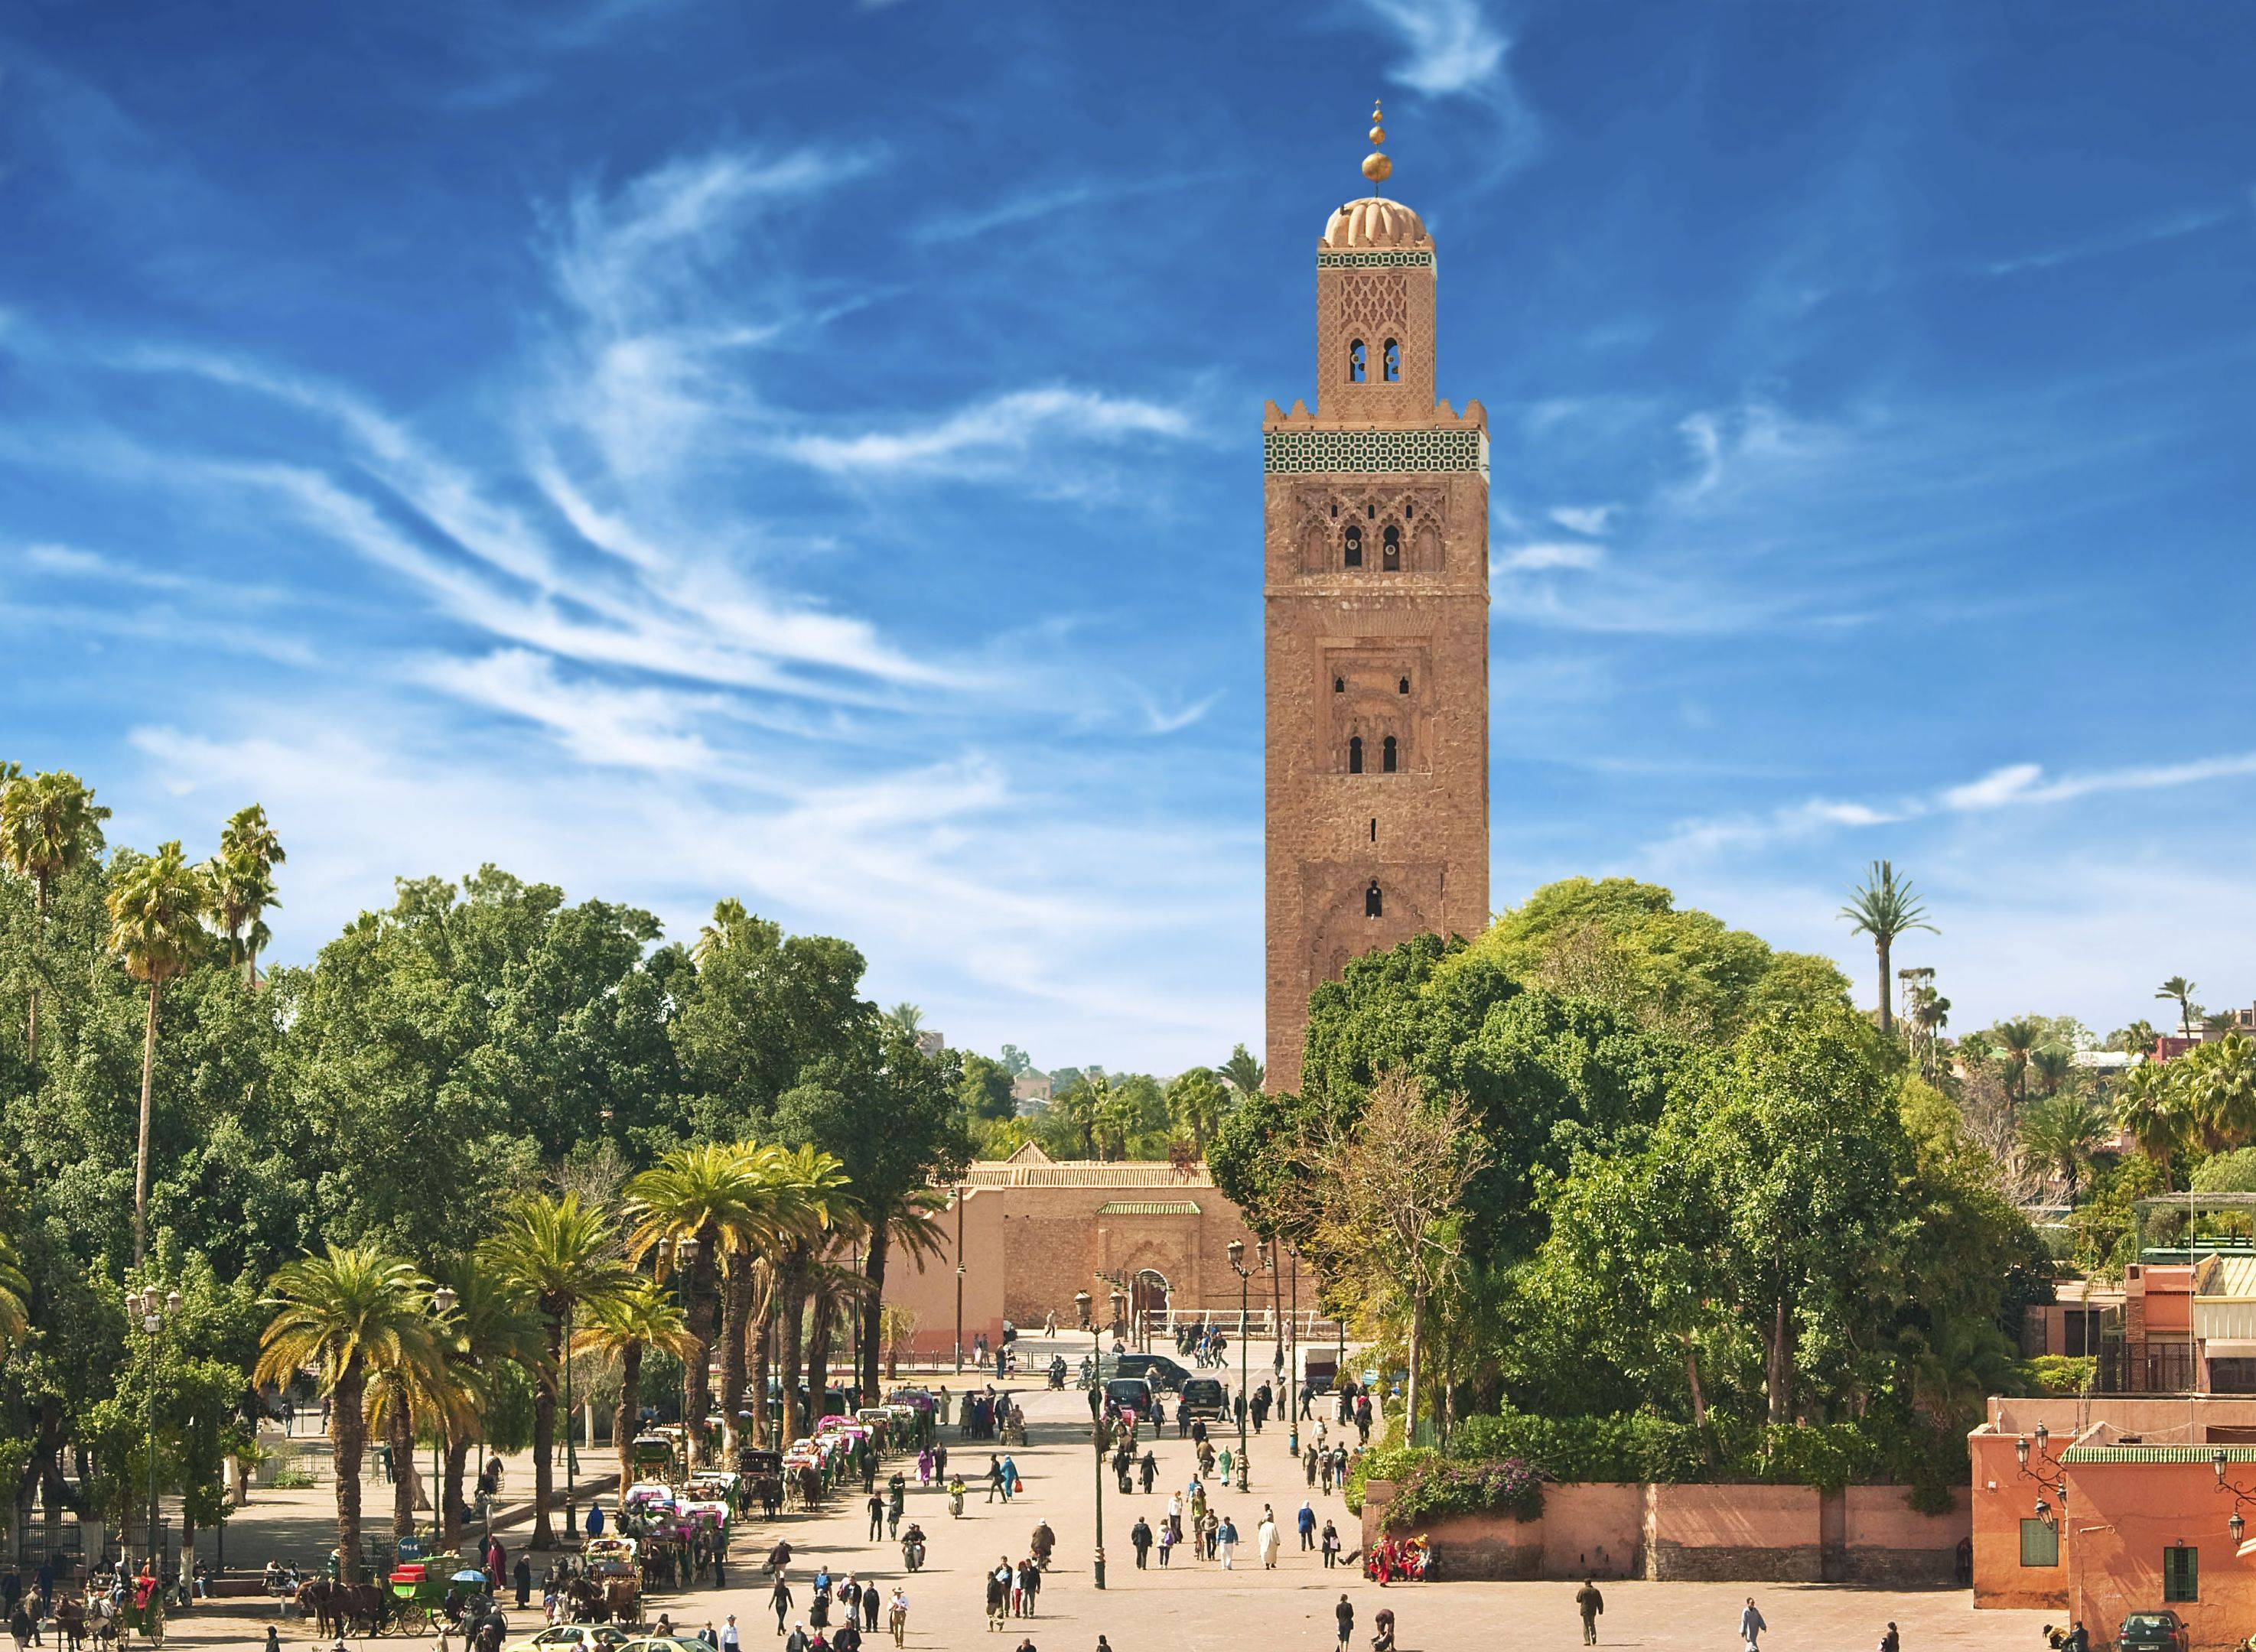 Bienvenidos a Marrakech